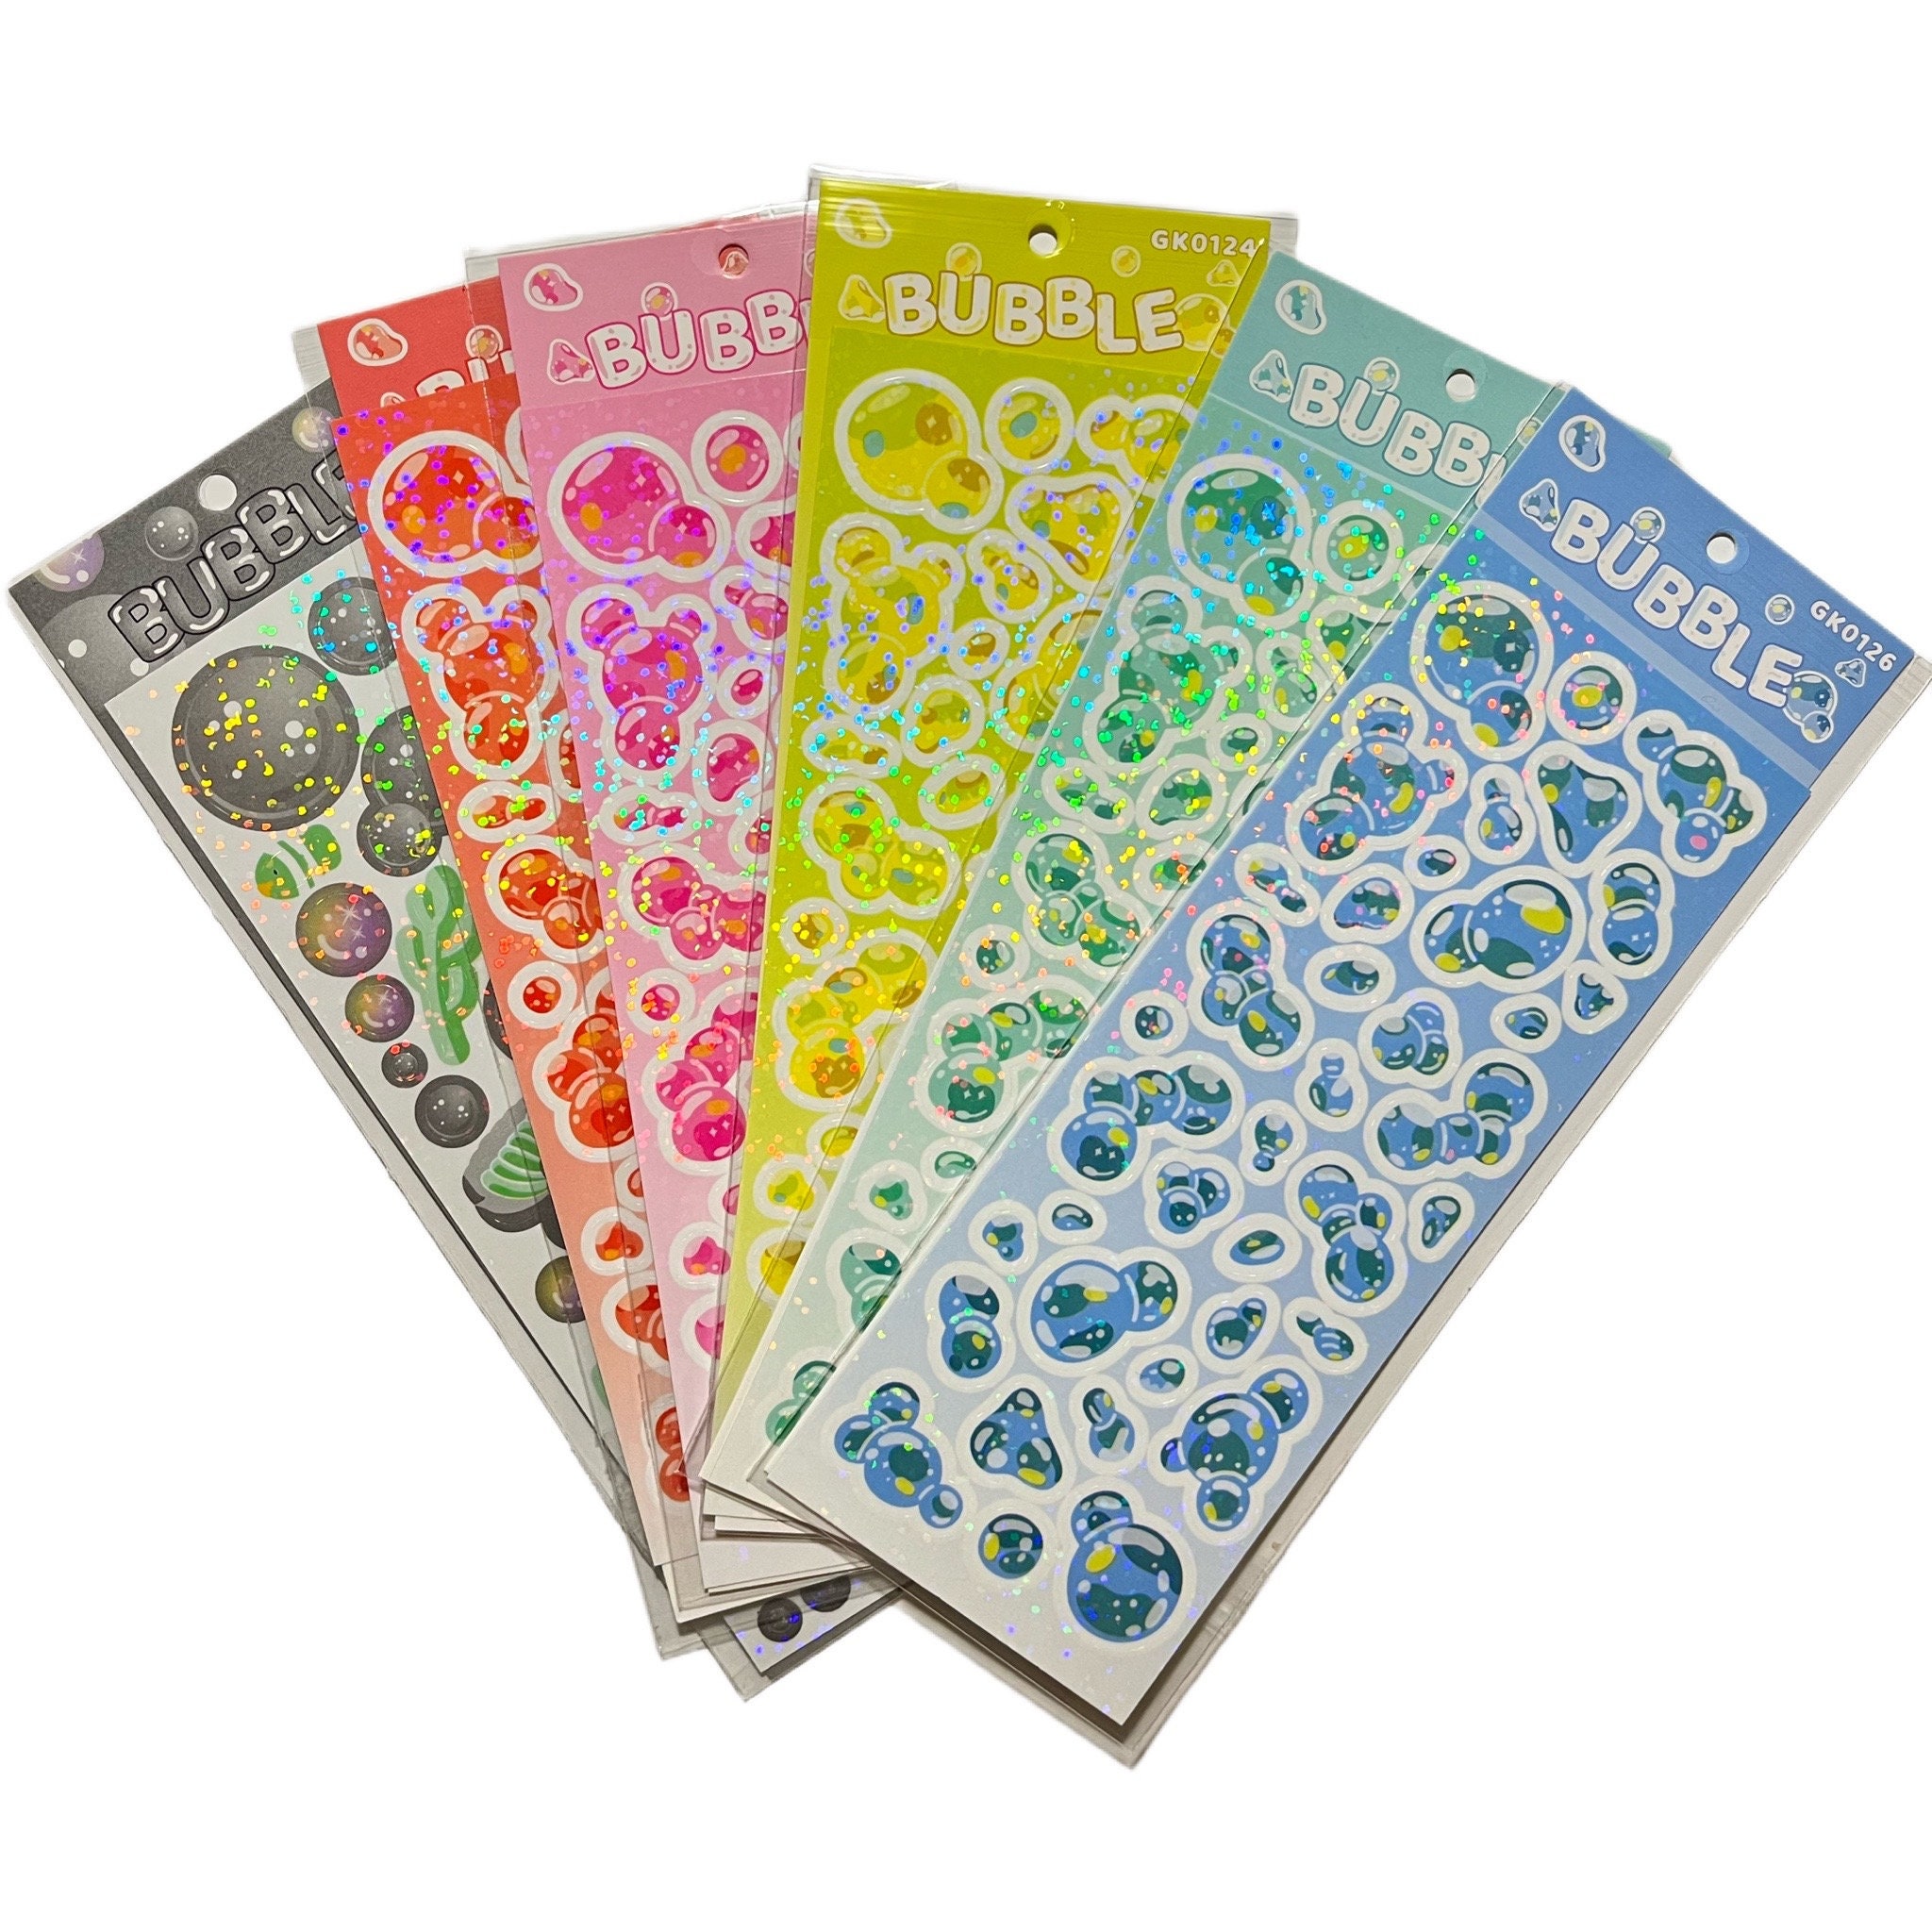 Sparkle Confetti Deco Stickers, Polco Stickers, Korean Stickers